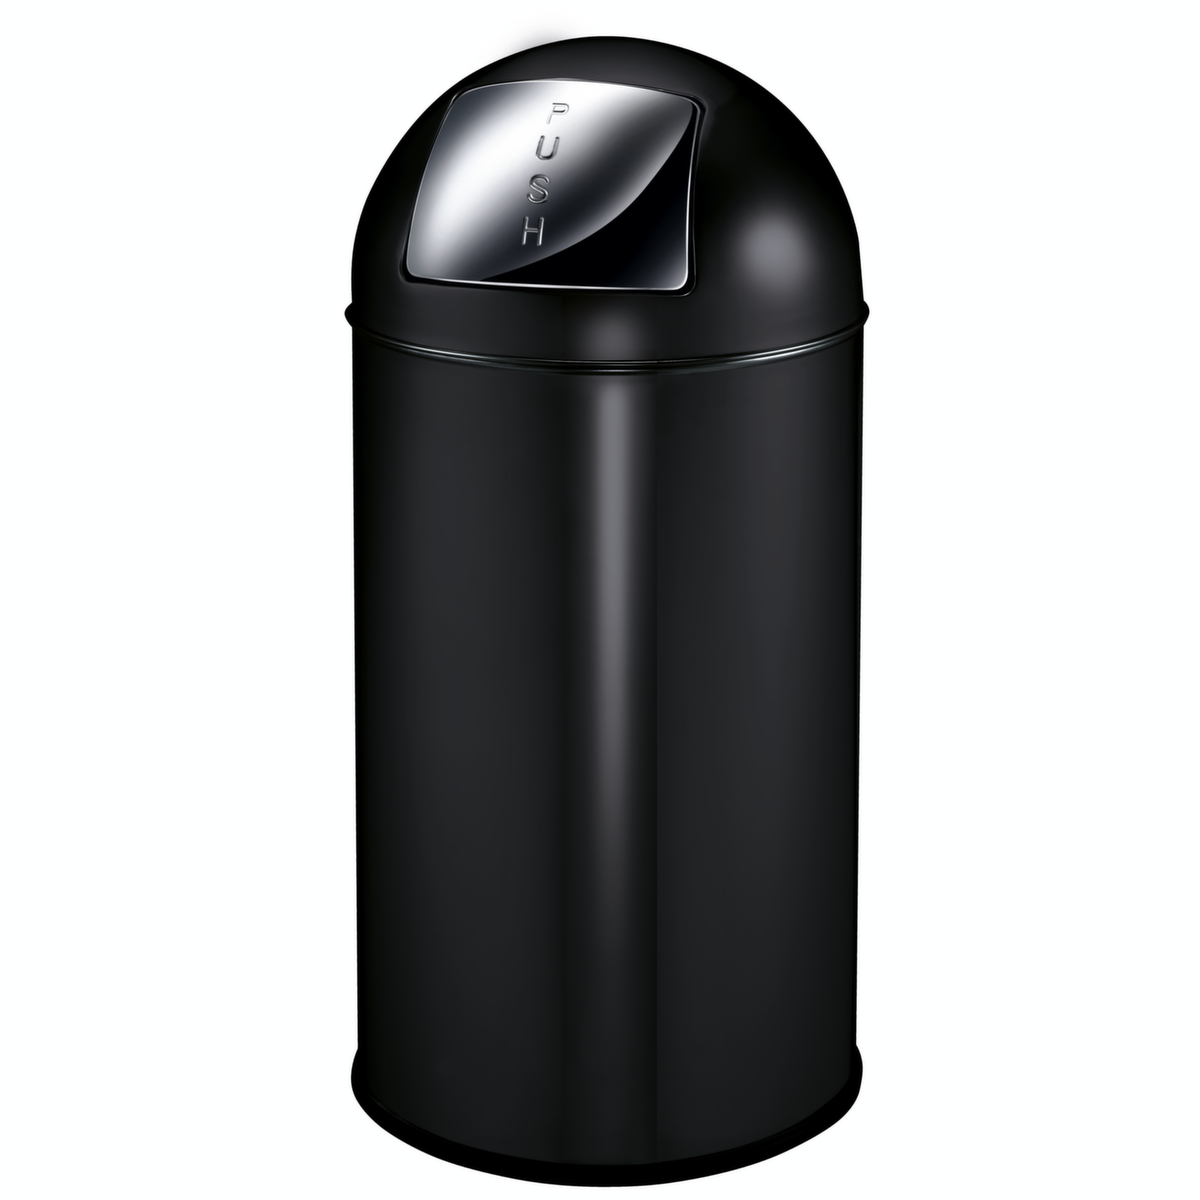 Feuersicherer Abfallbehälter EKO Pushcan, 40 l, schwarz Standard 1 ZOOM